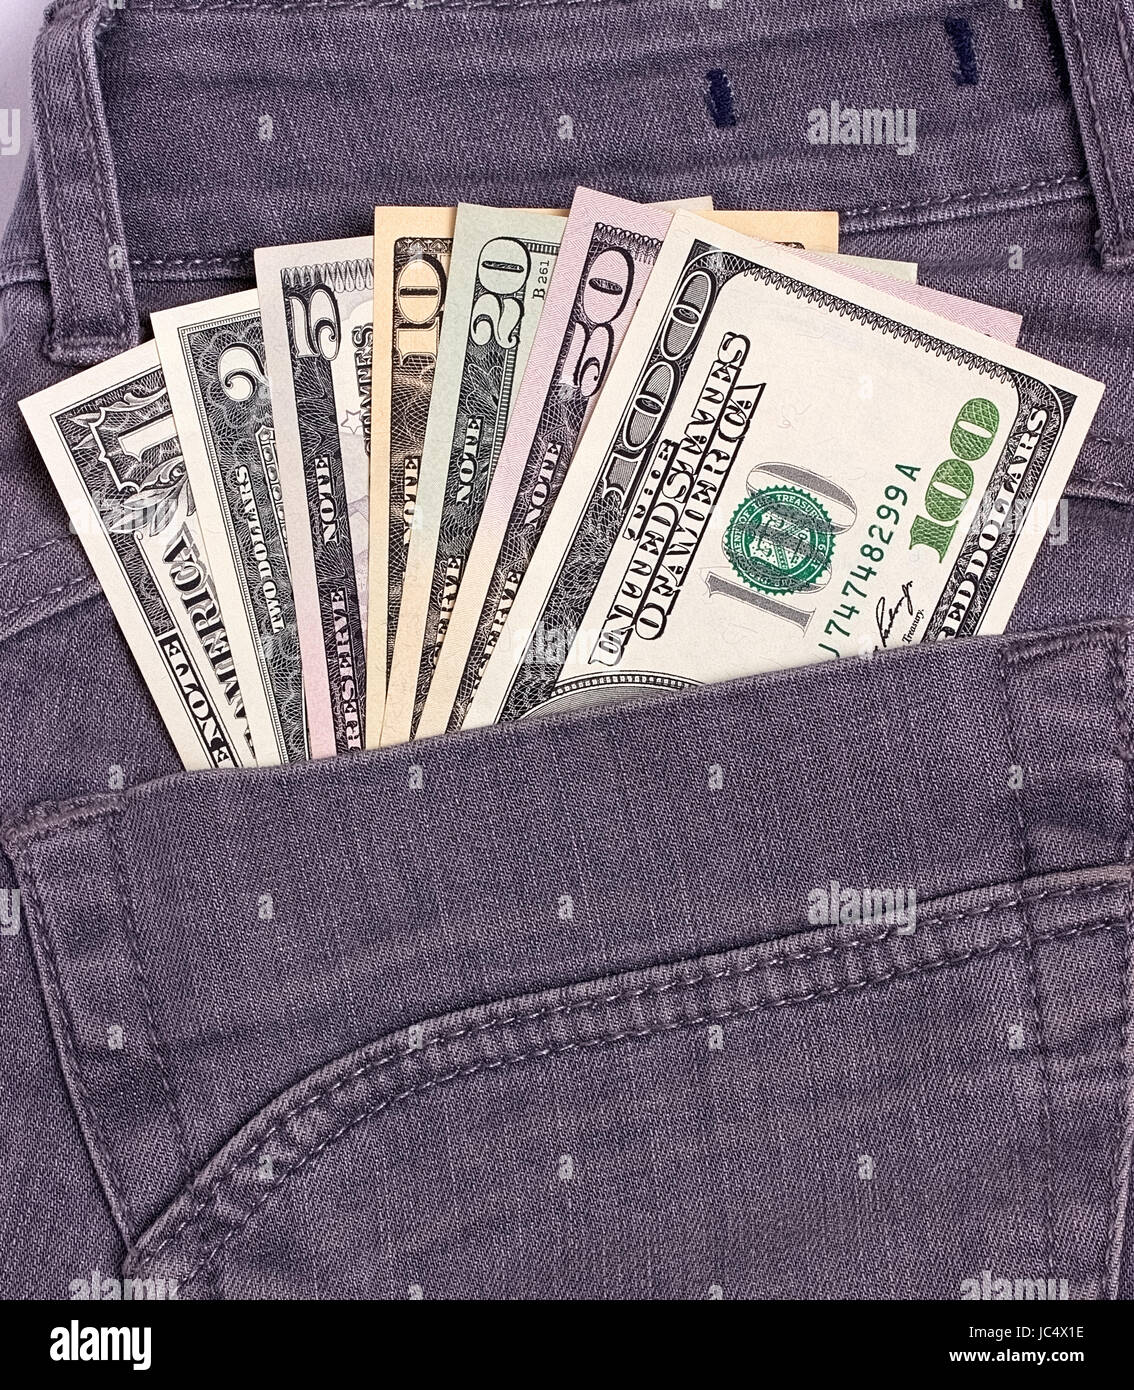 Dollars bills in black jeans back pocket Stock Photo